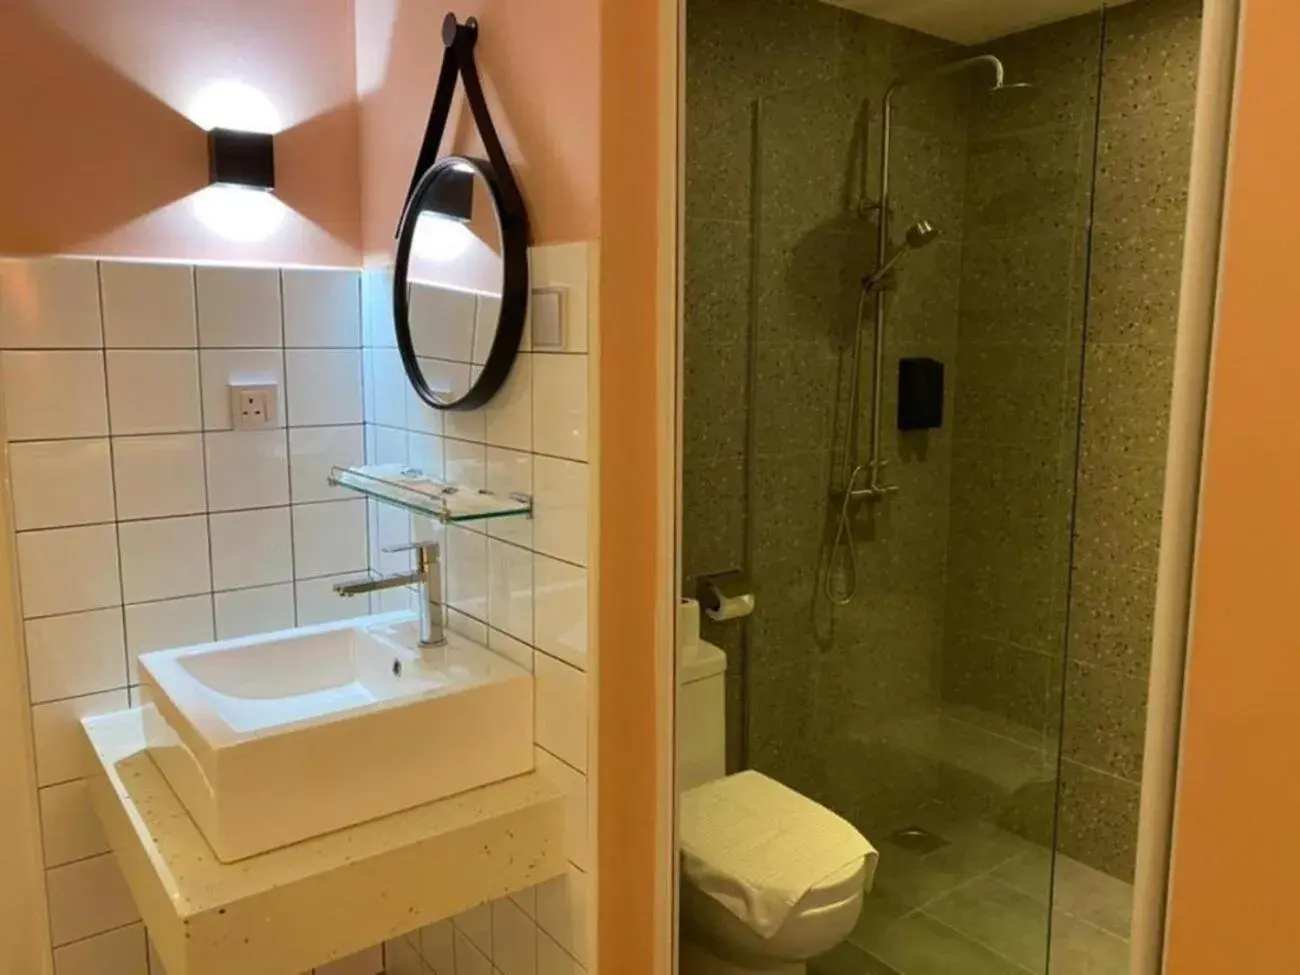 Bathroom in Woco Hotel Kinrara